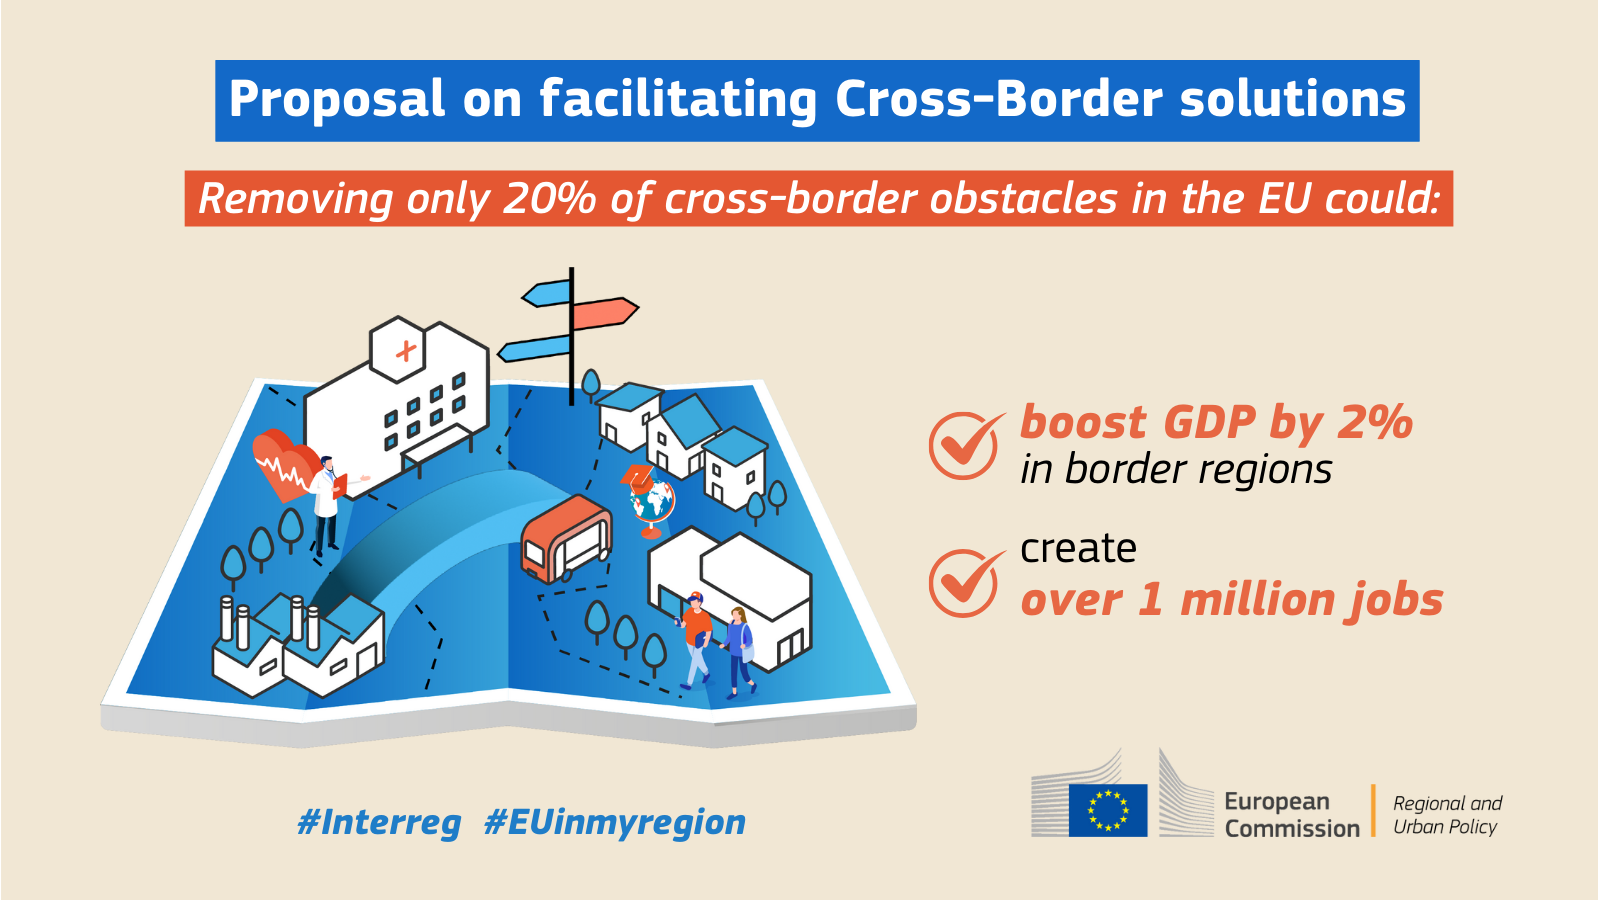 Komission ehdotuksen tarkoituksena on hyödyntää Euroopan raja-alueiden potentiaalia poistamalla oikeudellisia ja hallinnollisia esteitä